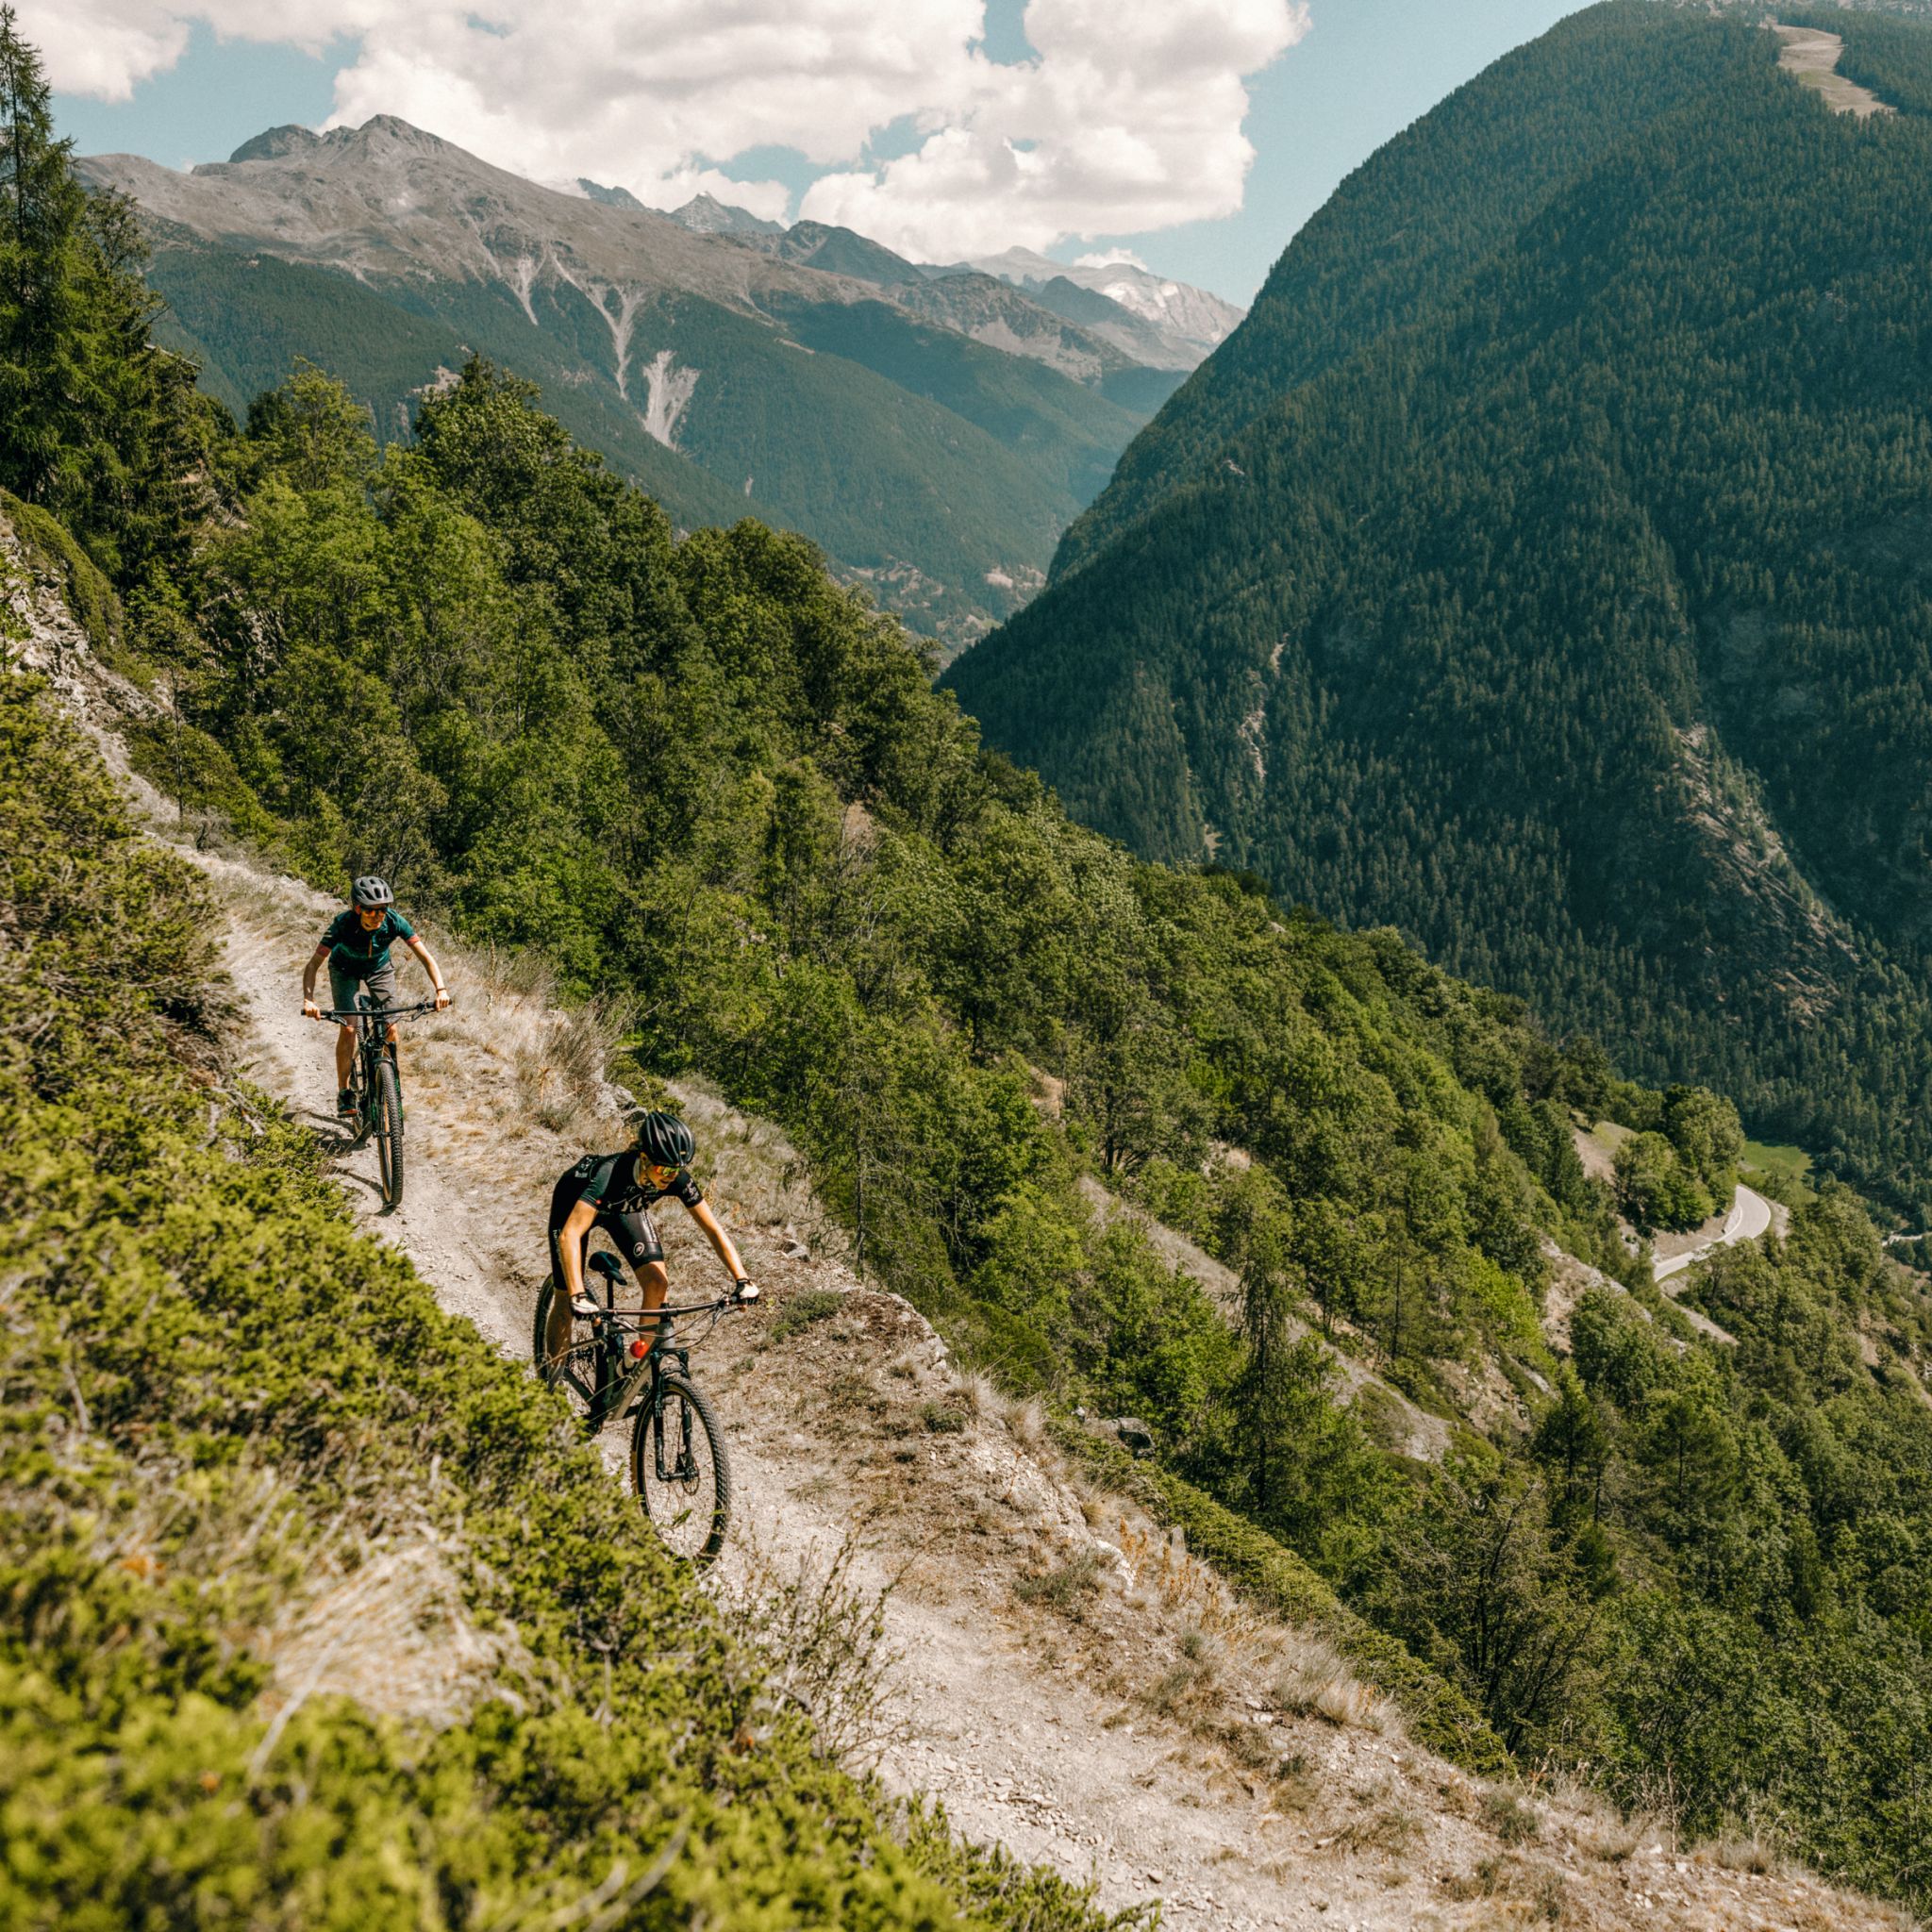 Zwei Mountainbiker in voller Anstrengung, die einen Mountainbikeweg hinunterfahren.  Wallis, Schweiz.